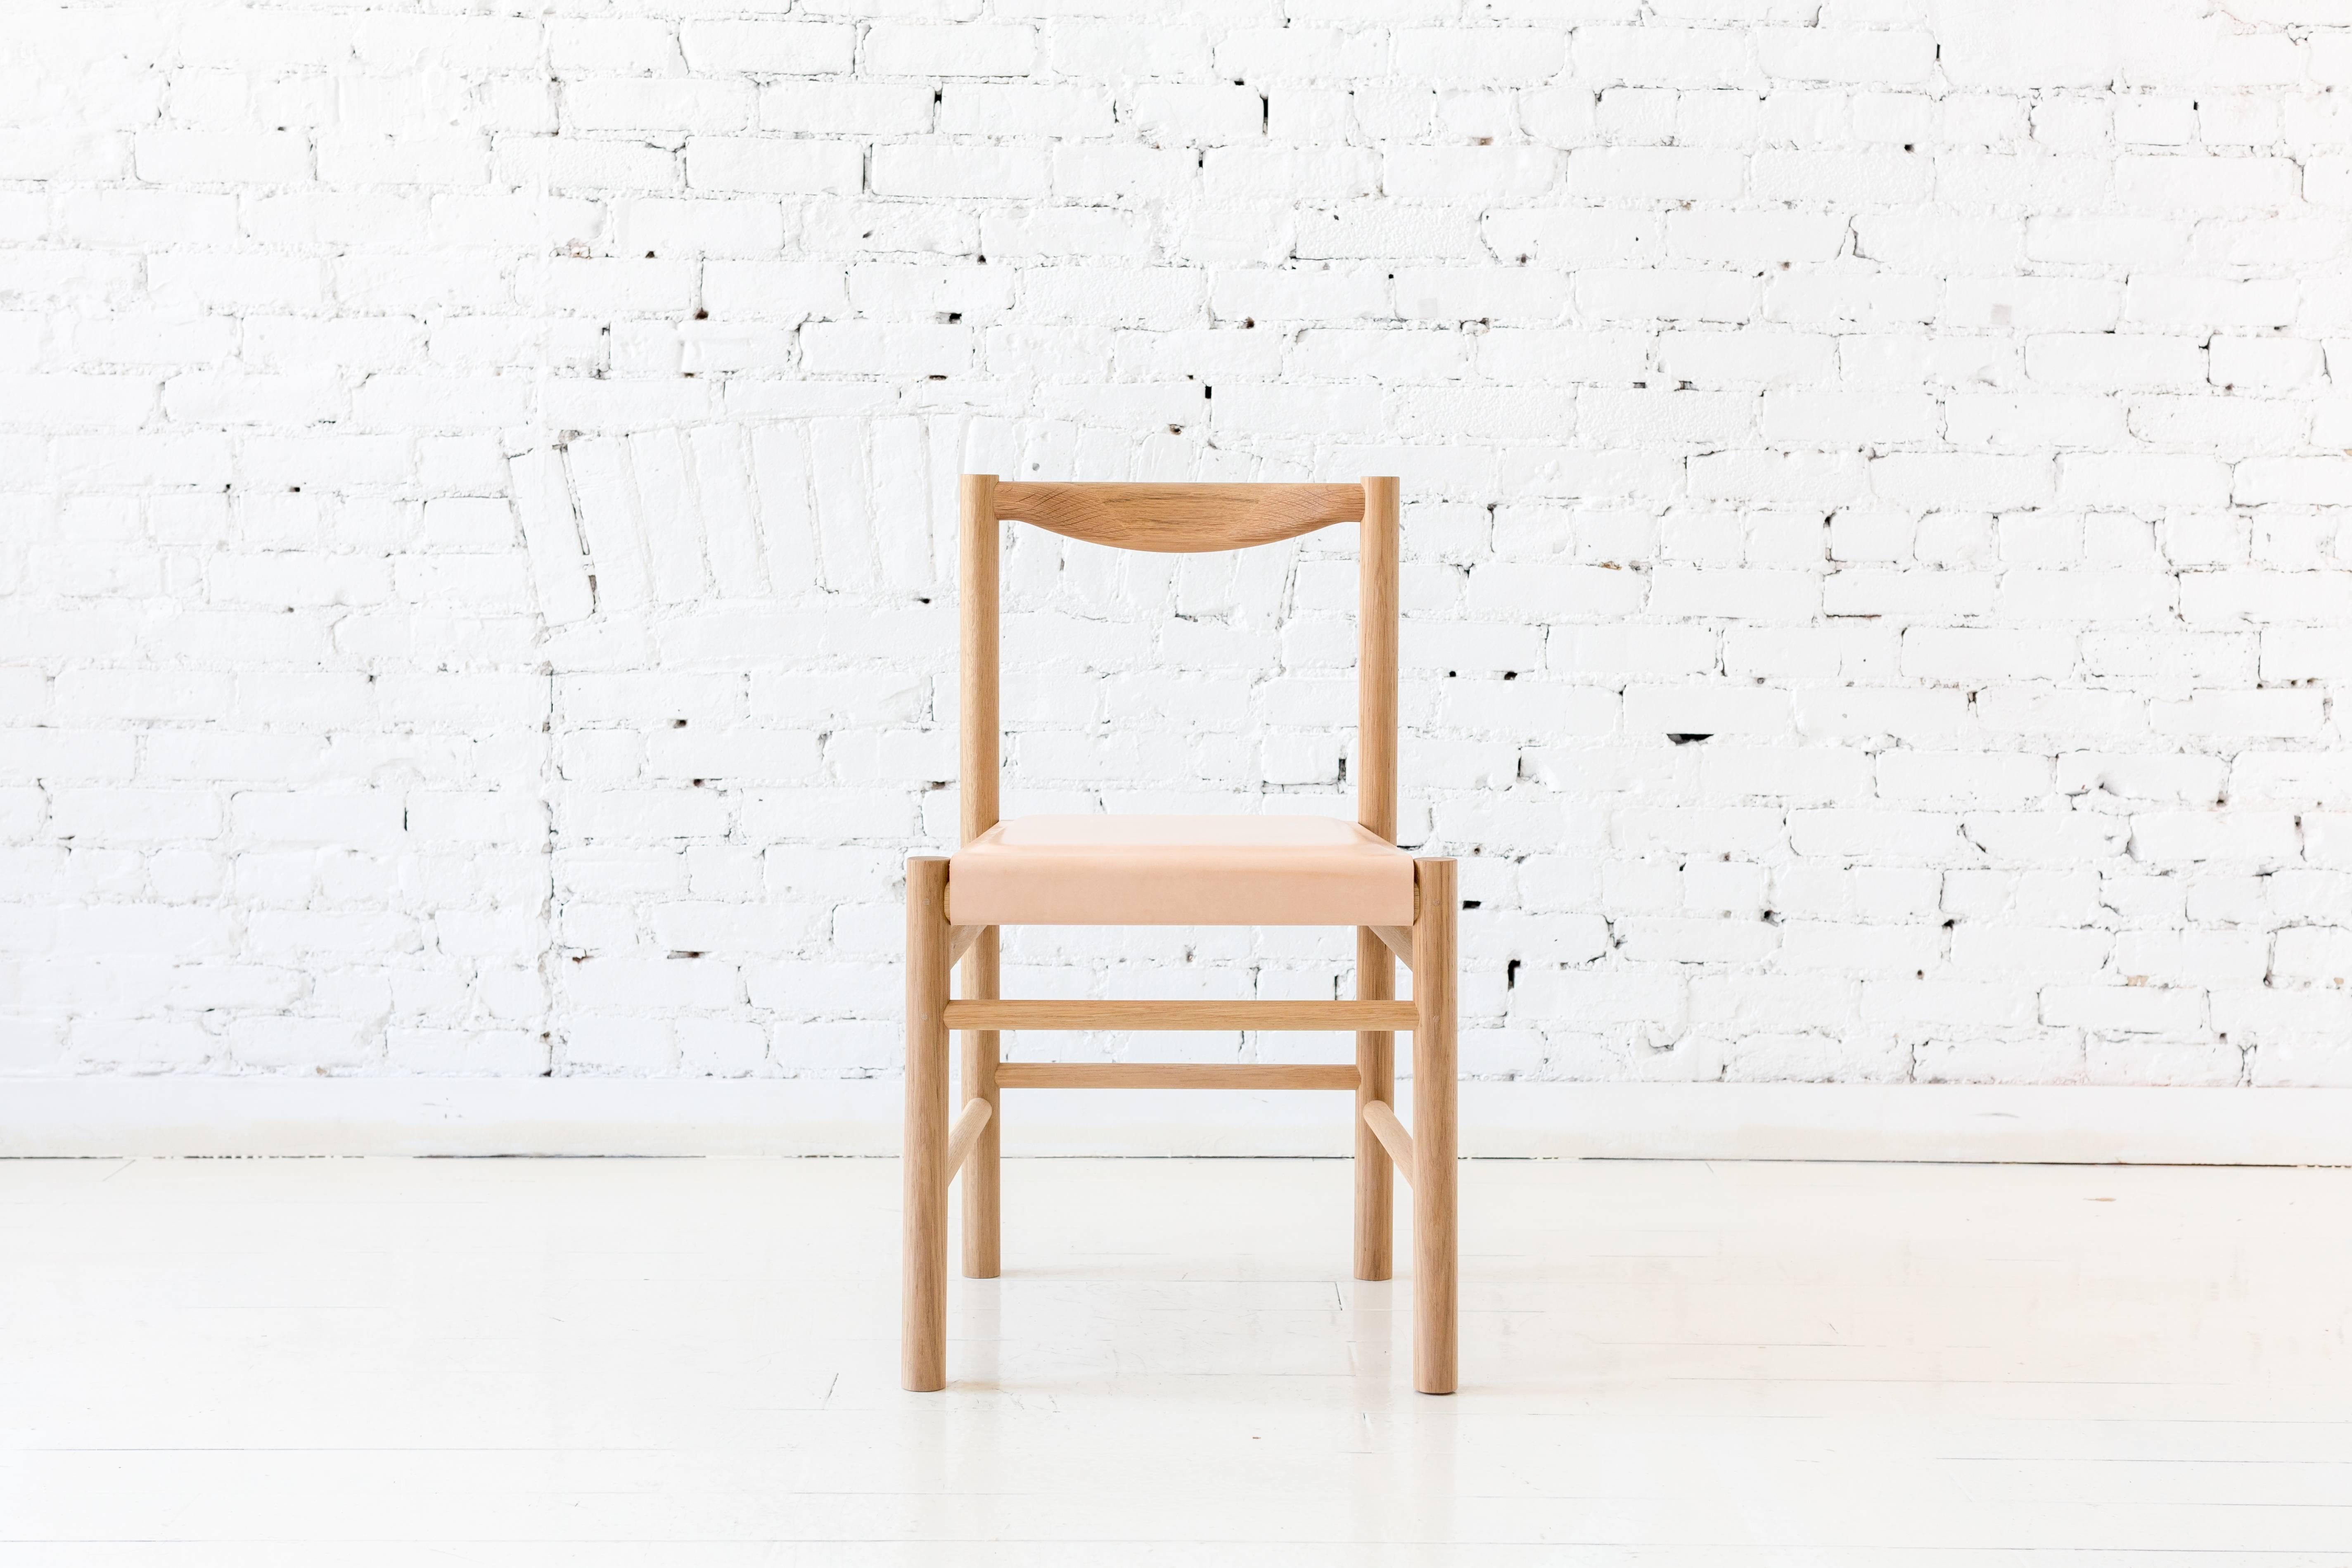 Vom Shaker-Stil inspirierter Beistellstuhl aus Weißeiche mit bequemer, konturierter Rückenlehne. Die Sitzschale aus Holz ist mit einem flachen Pad aus pflanzlich gegerbtem Leder ausgestattet. Durch seine Schlichtheit ist dieser Stuhl vielseitig